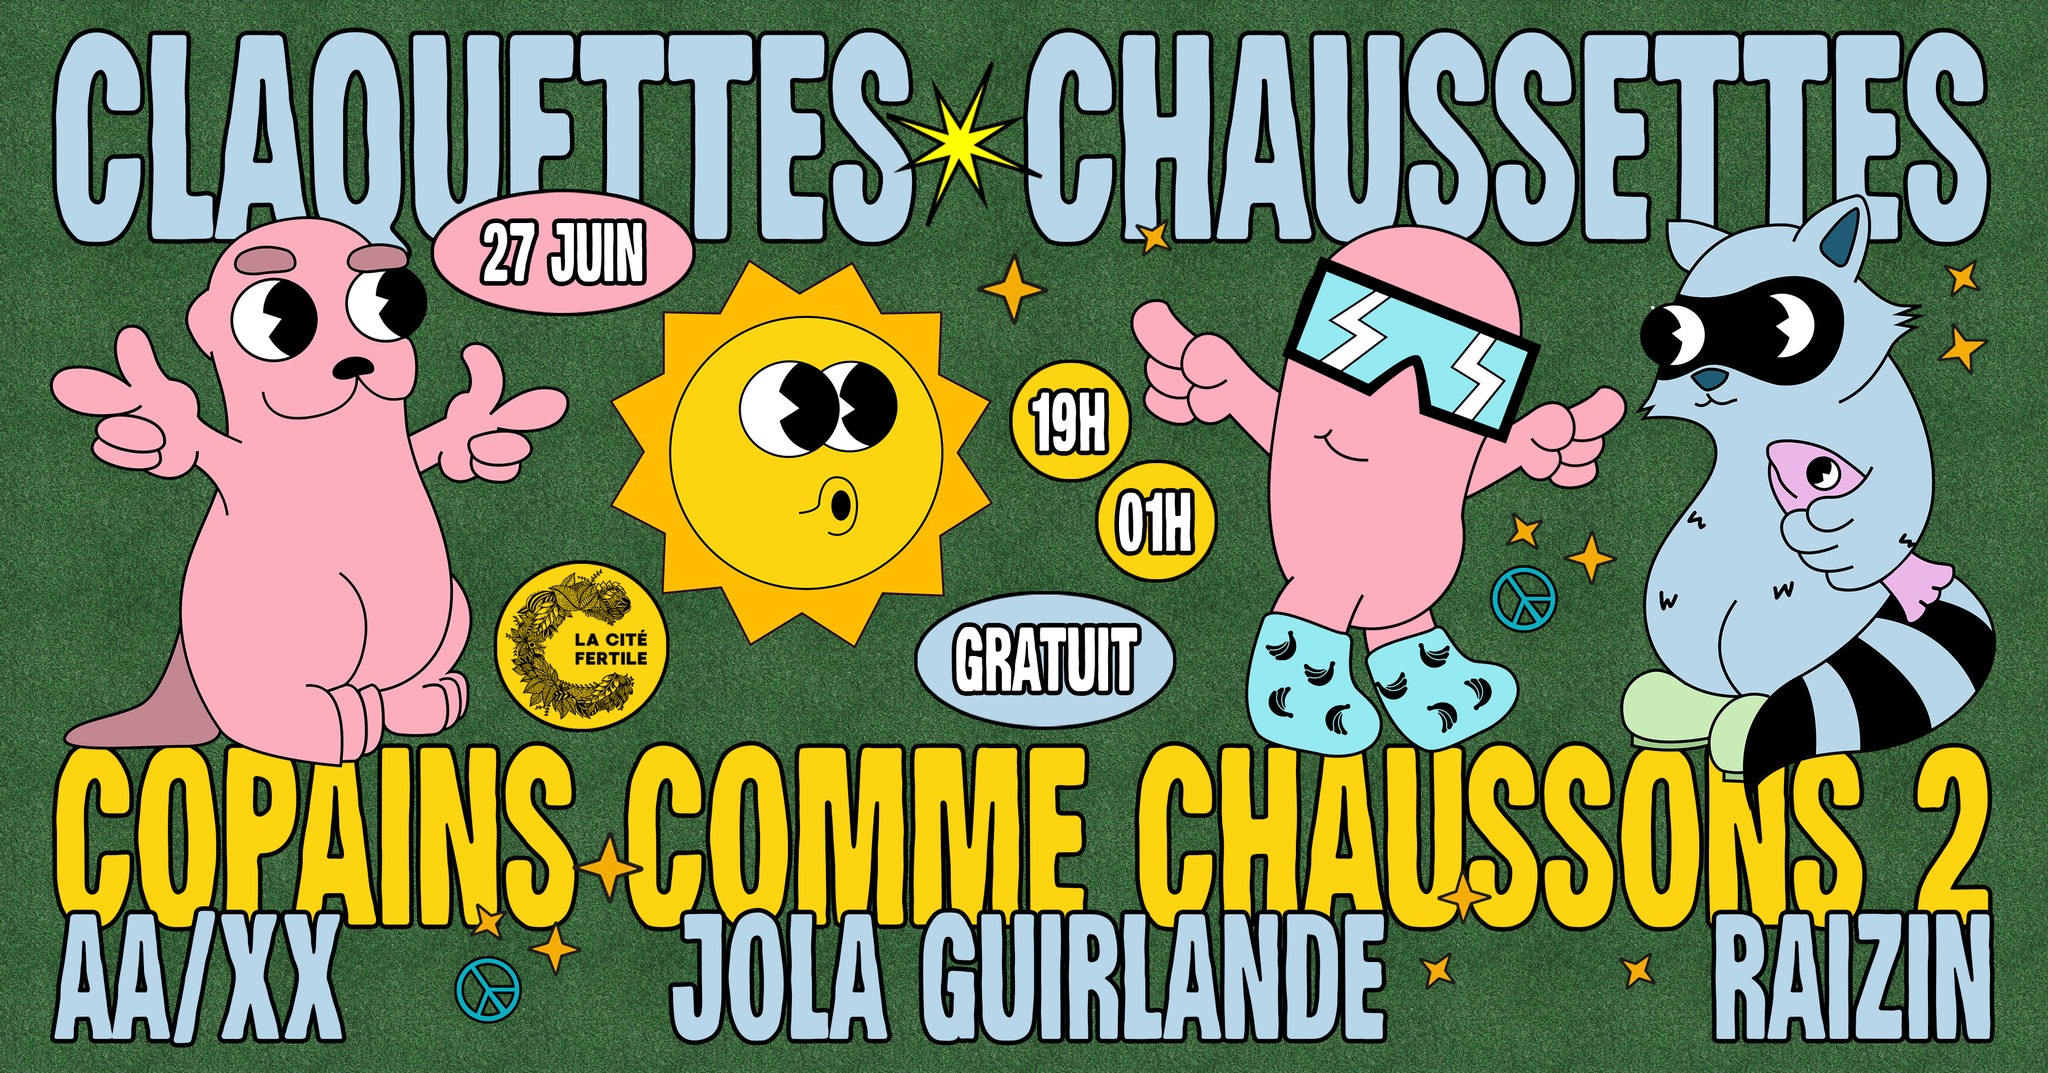 Claquettes Chaussettes x La Cité Fertile : copains comme chaussons 2 [OPEN AIR GRATUIT]